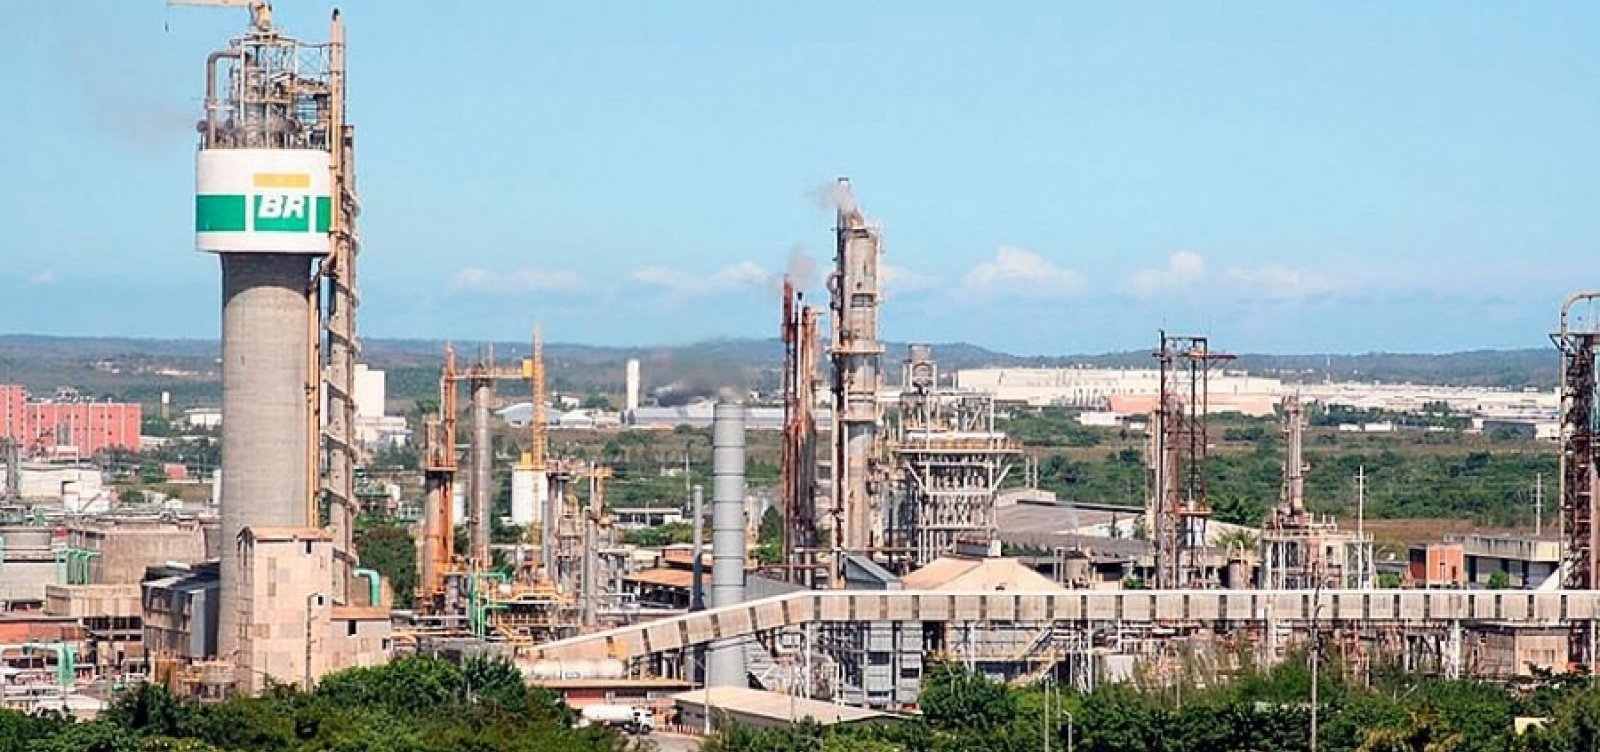 Justiça determina que Petrobras suspenda fechamento da Fafen em Camaçari